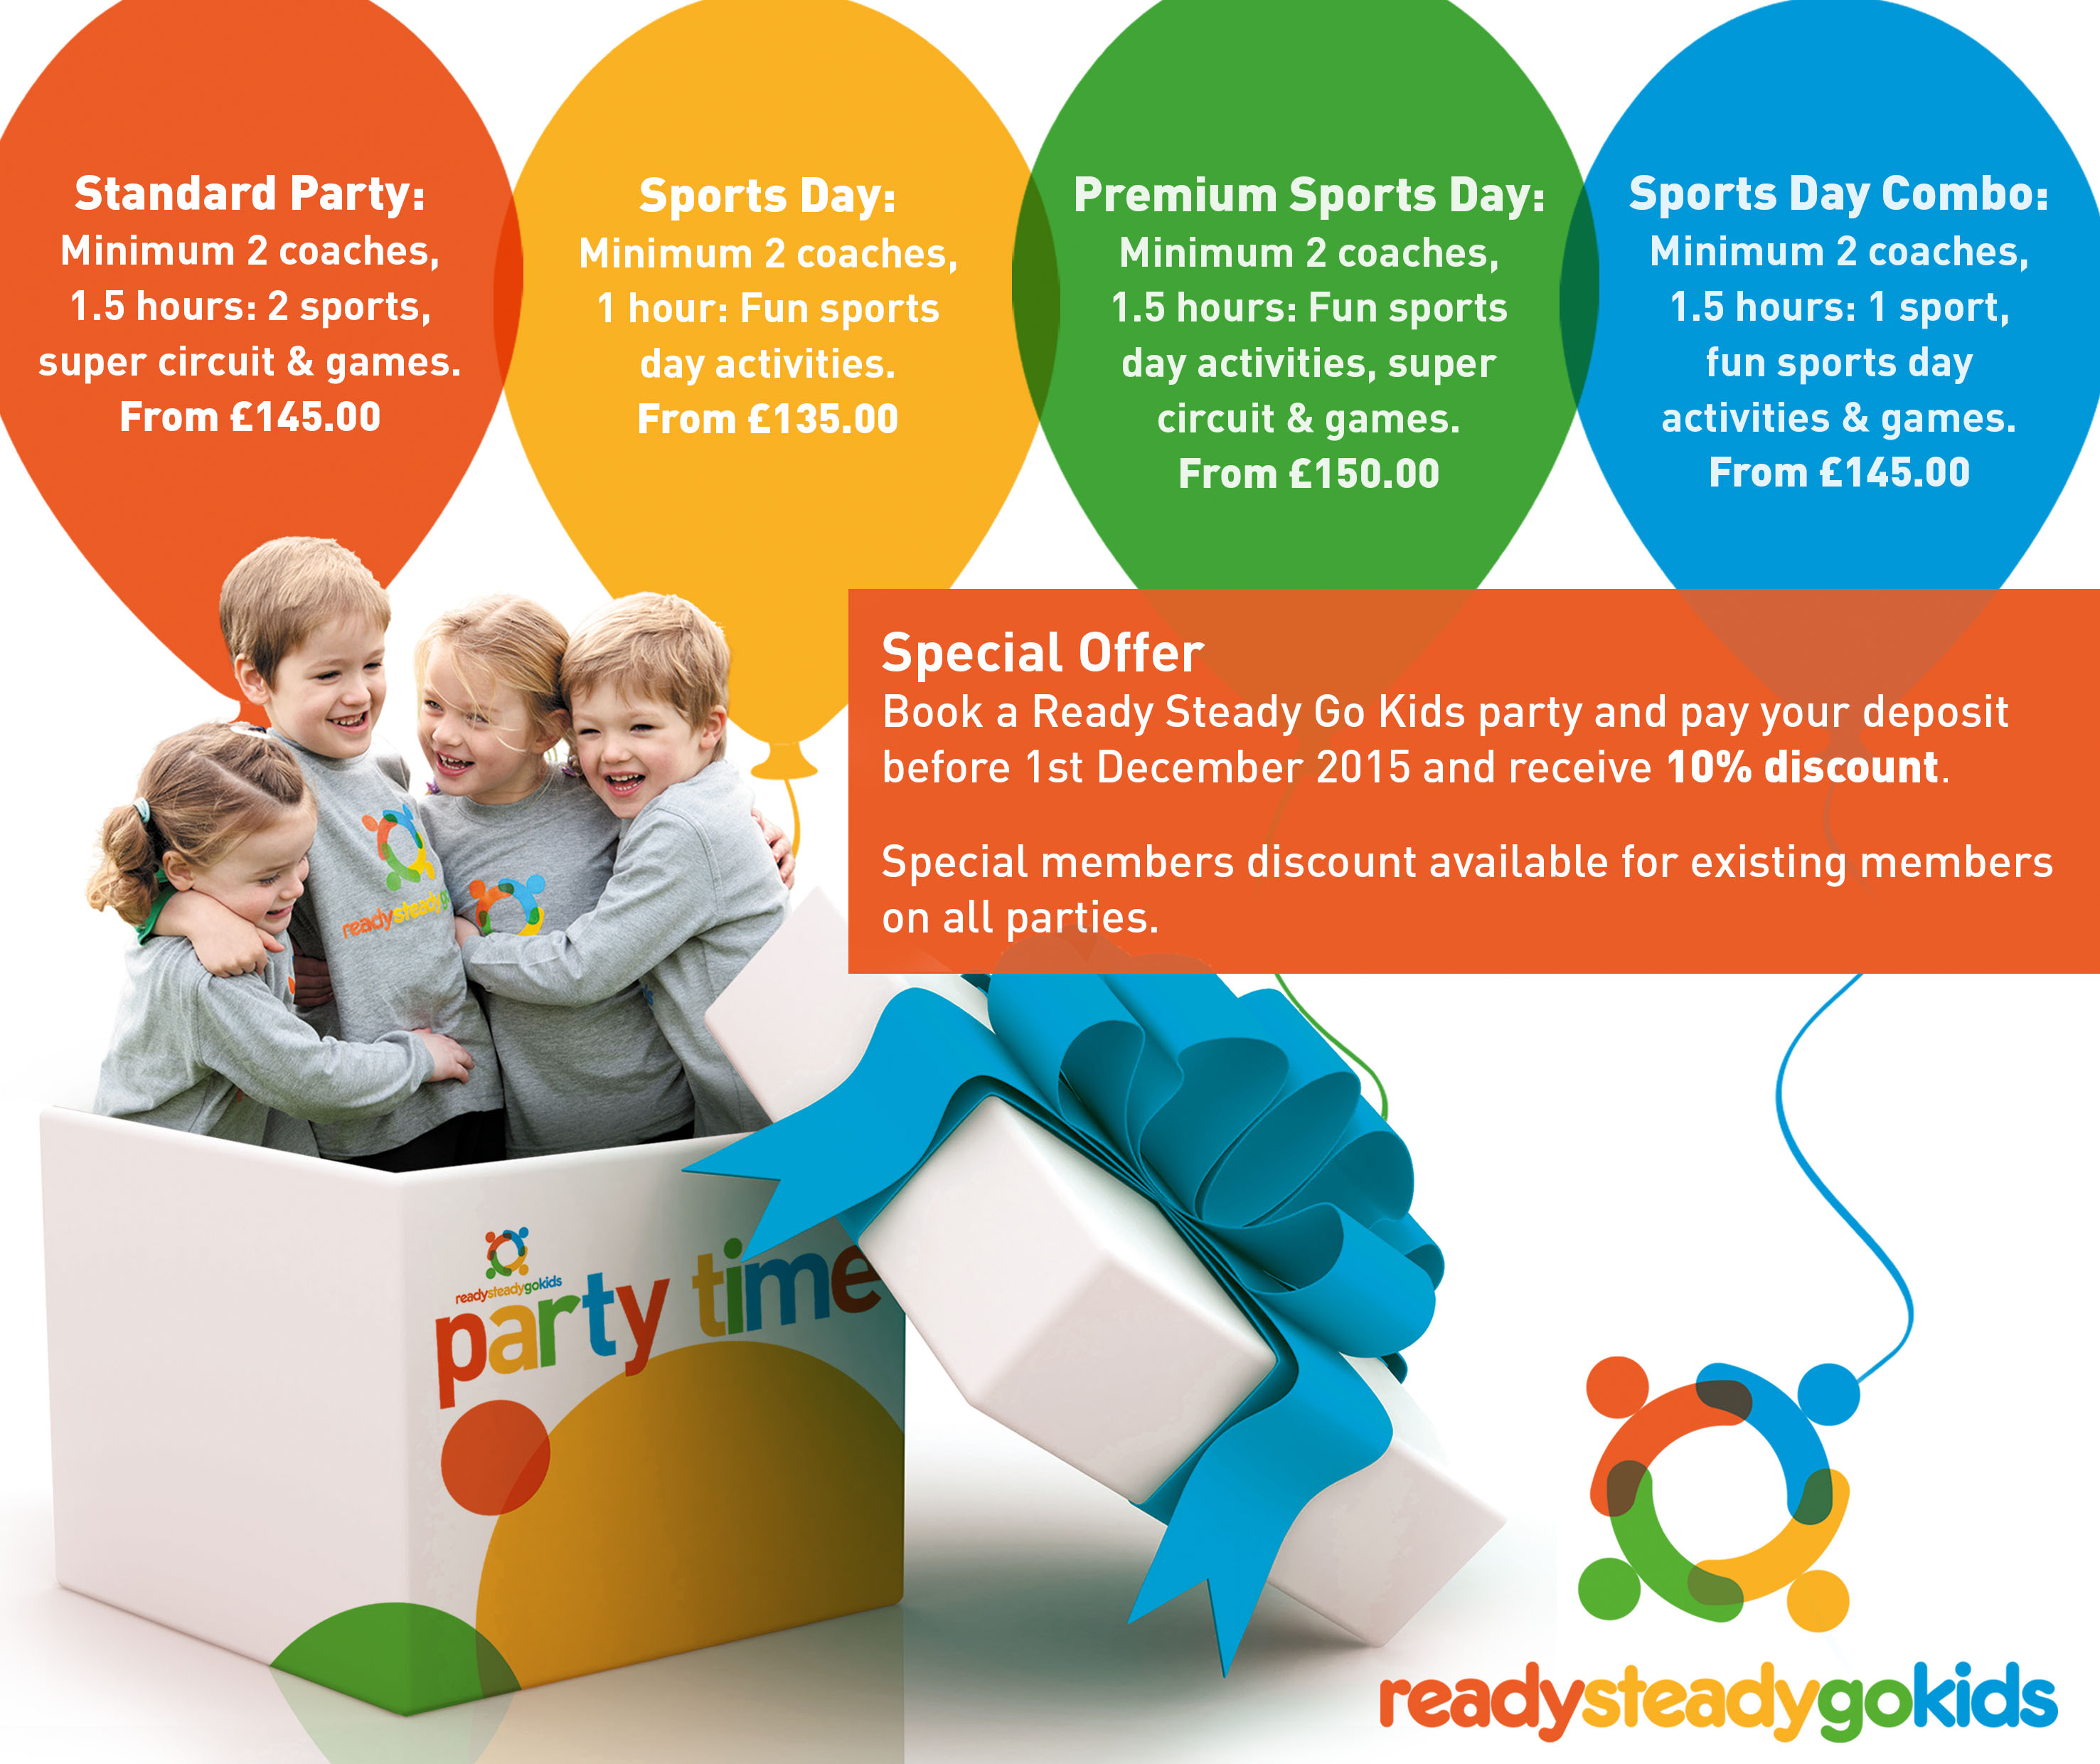 Latest News & Events - Ready Steady Go Kids